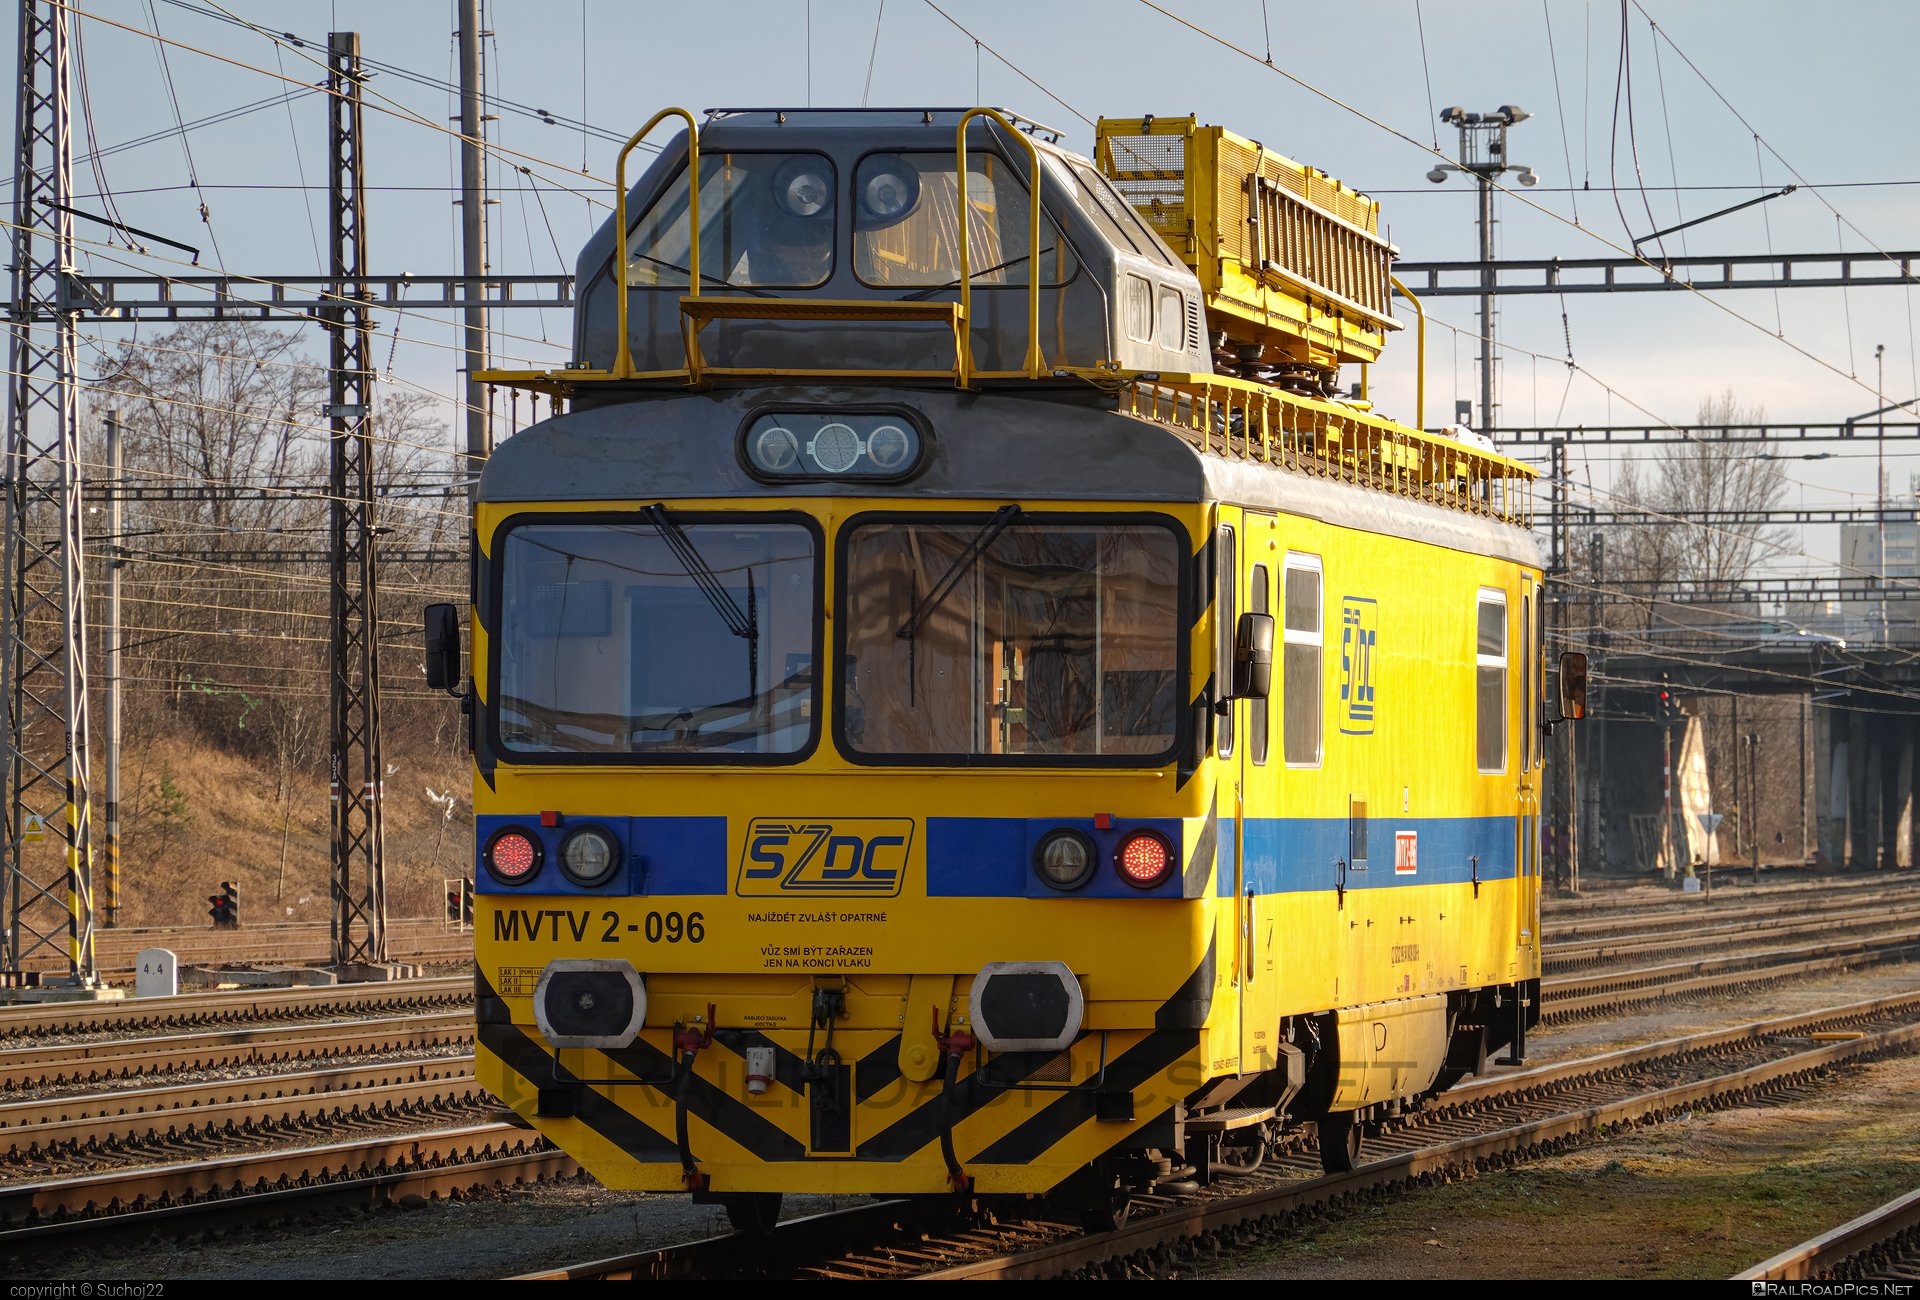 Vagónka Studénka MVTV 2 - MVTV 2-096 operated by Správa železnic, státní organizace #locomotivemvtv #mvtv2 #spravaZeleznic #szcz #szdc #vagonkaStudenka